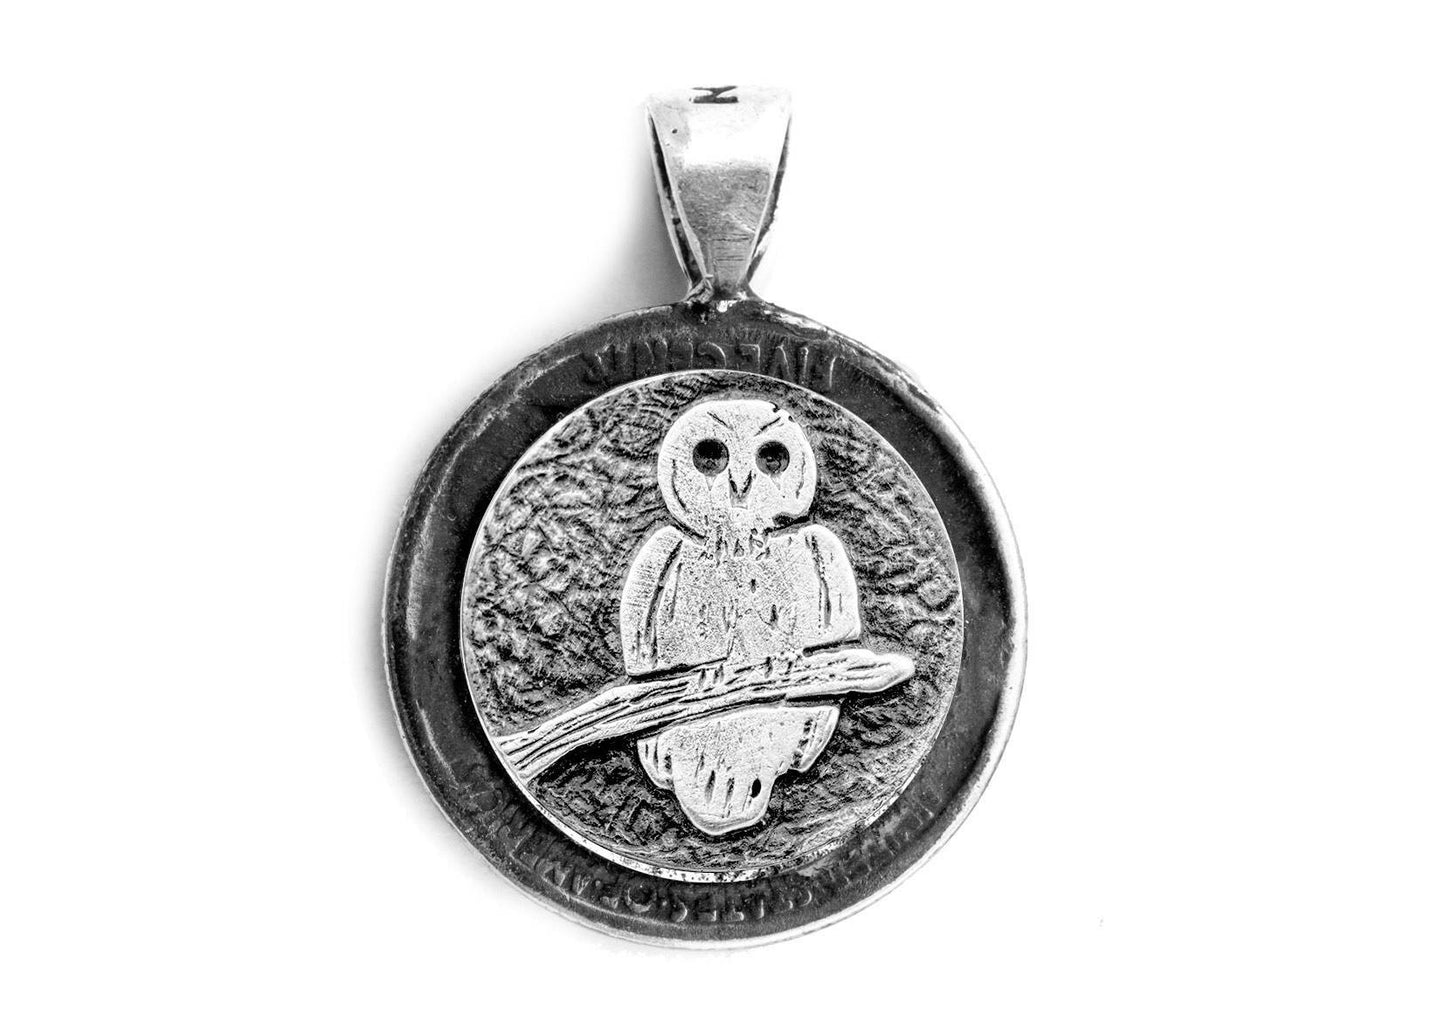 Silver Buffalo coin pendant with owl